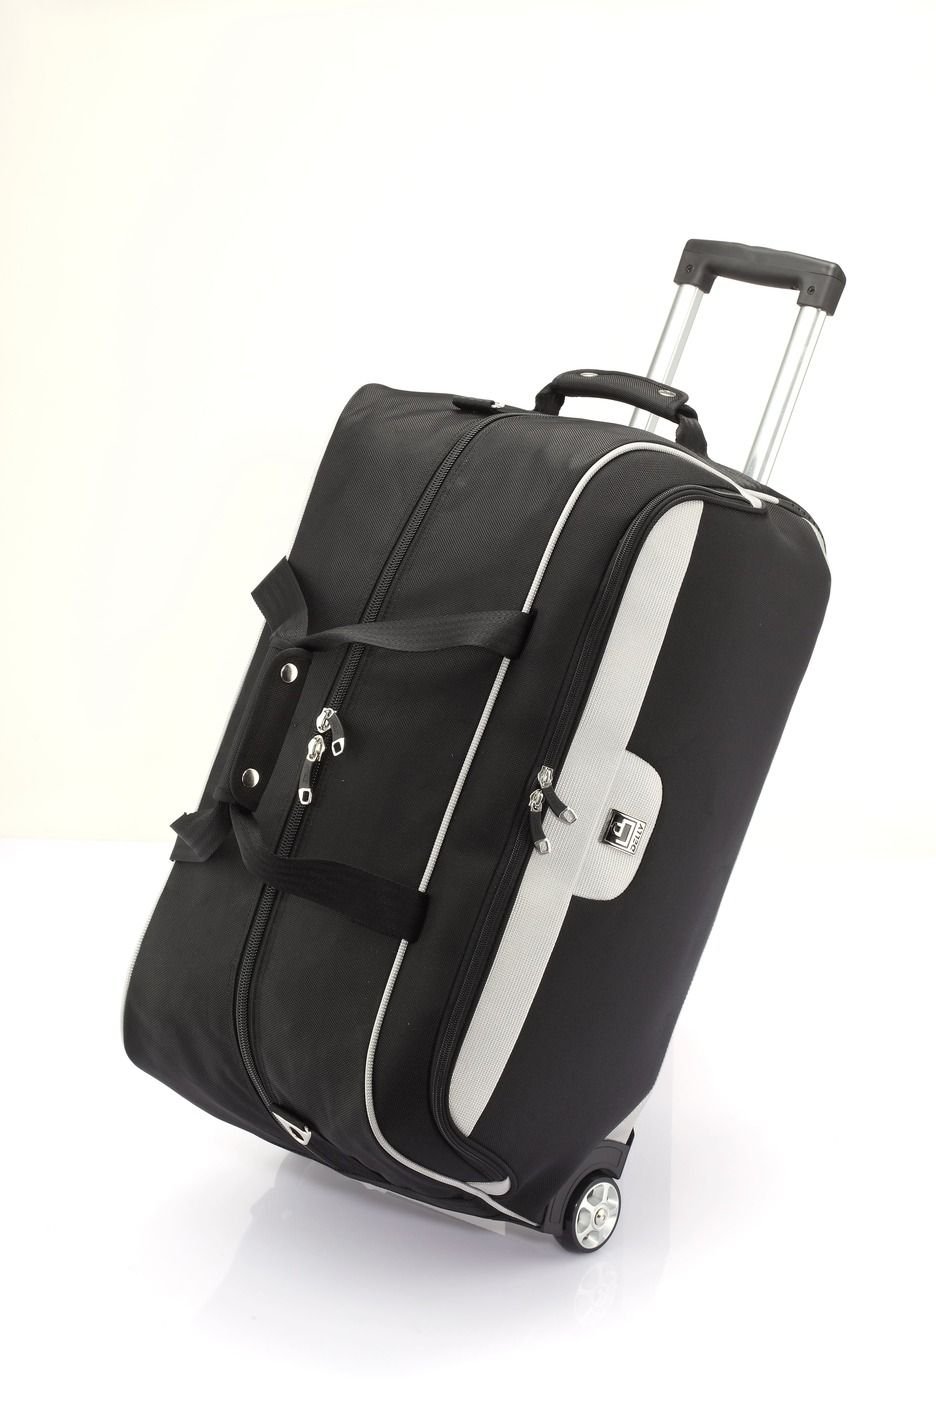 Bolsa de viaje plegable, bolsa de viaje plegable de gran capacidad, bolsa  de viaje ligera impermeable para llevar equipaje, Gris, Maletín